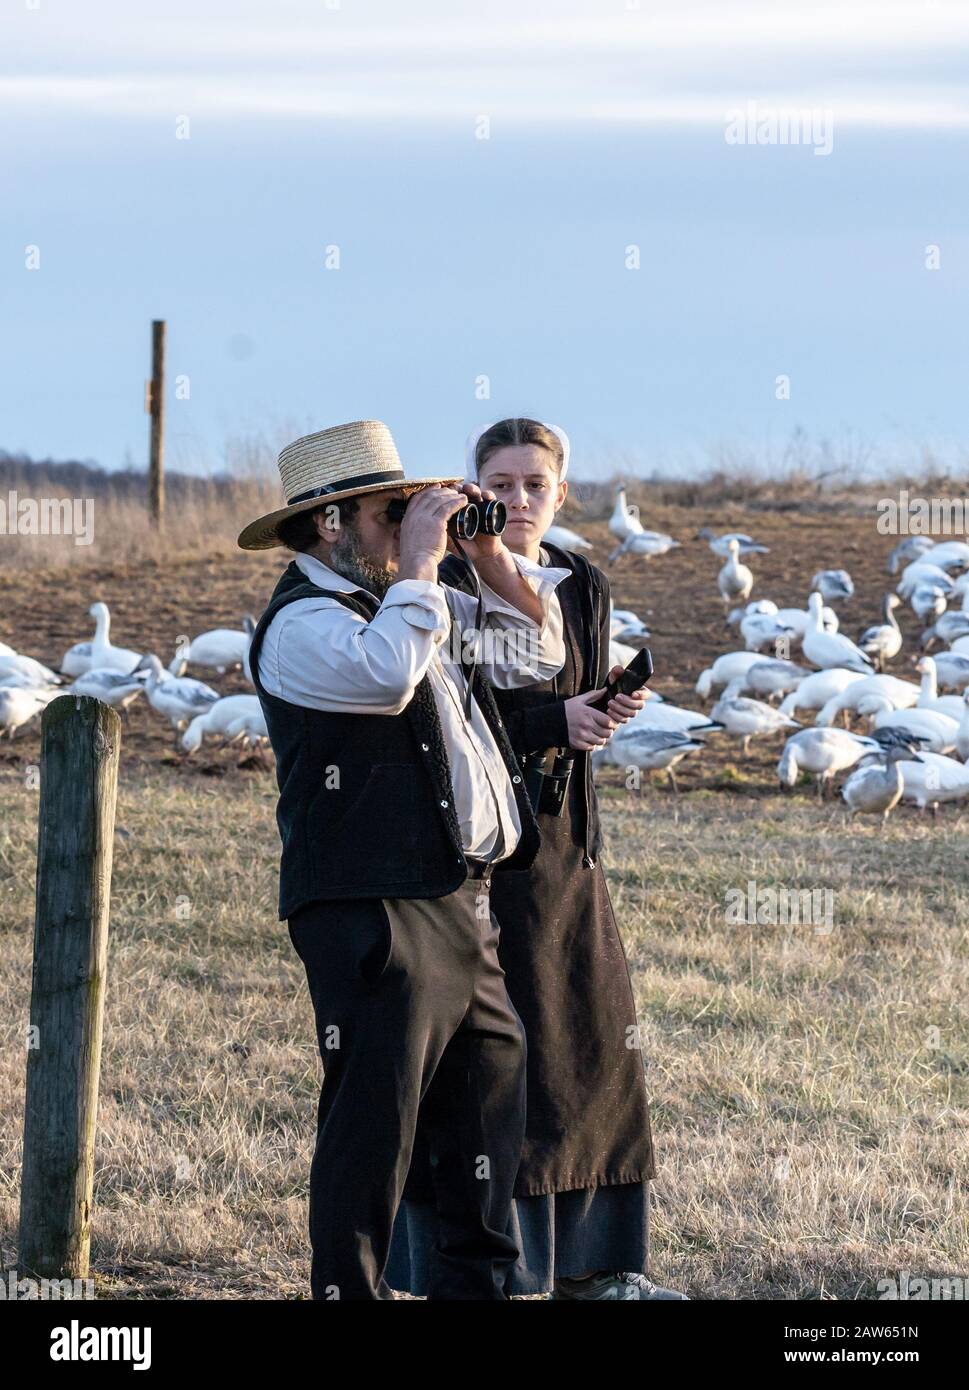 Condado de Lancaster, Pensilvania, EE.UU.: 3 de febrero de 2020: Pareja Amish mirando gansos de nieve en la reserva natural. Foto de stock